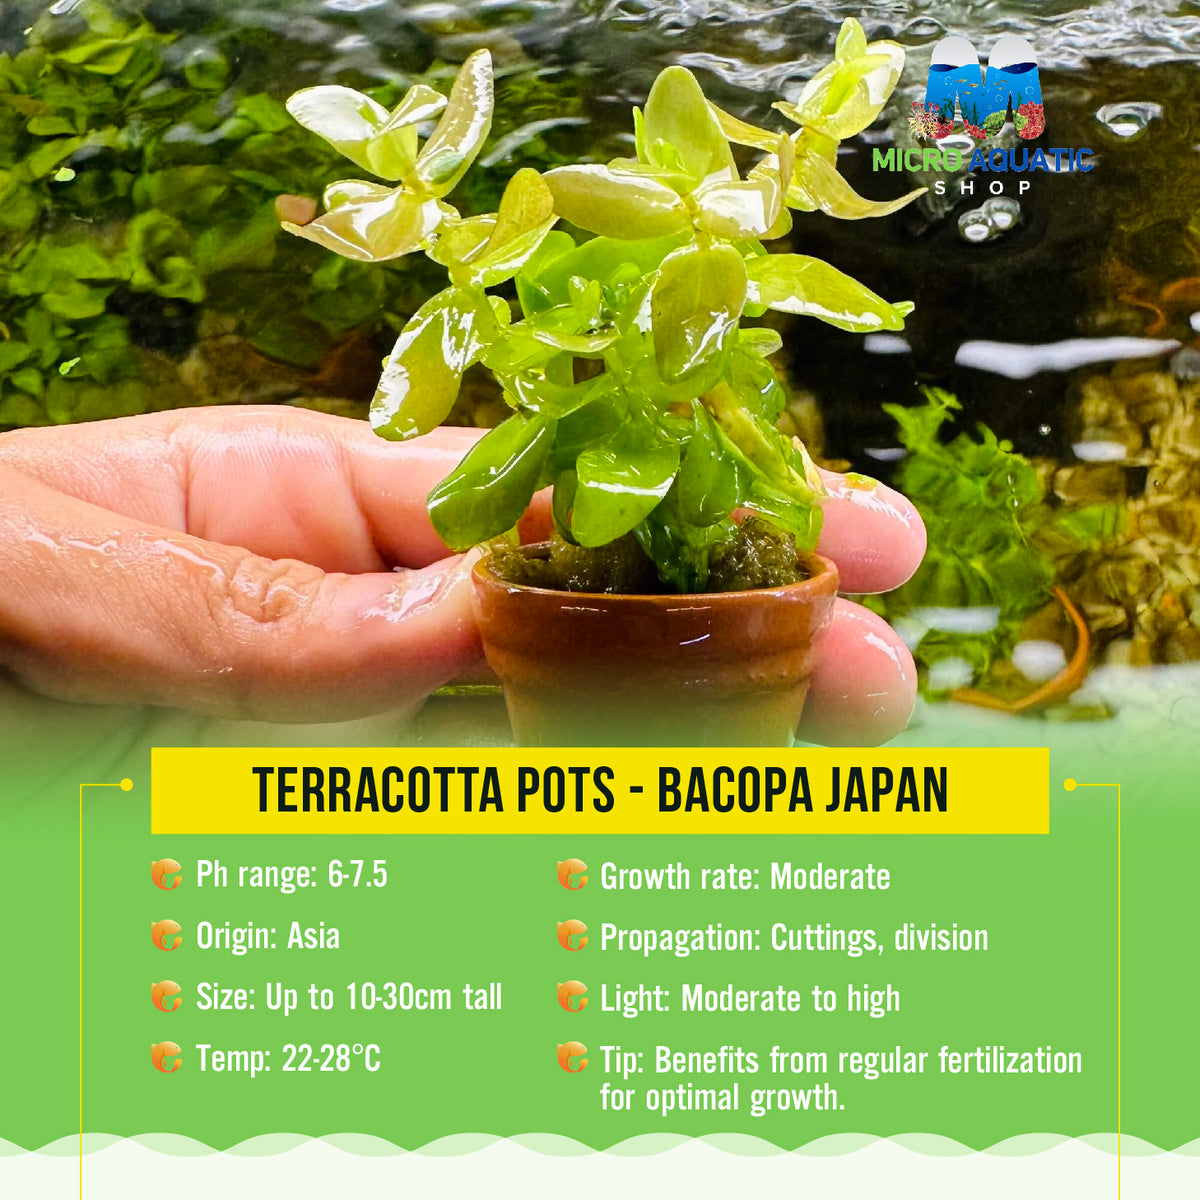 Terracotta Pots - Bacopa Japan